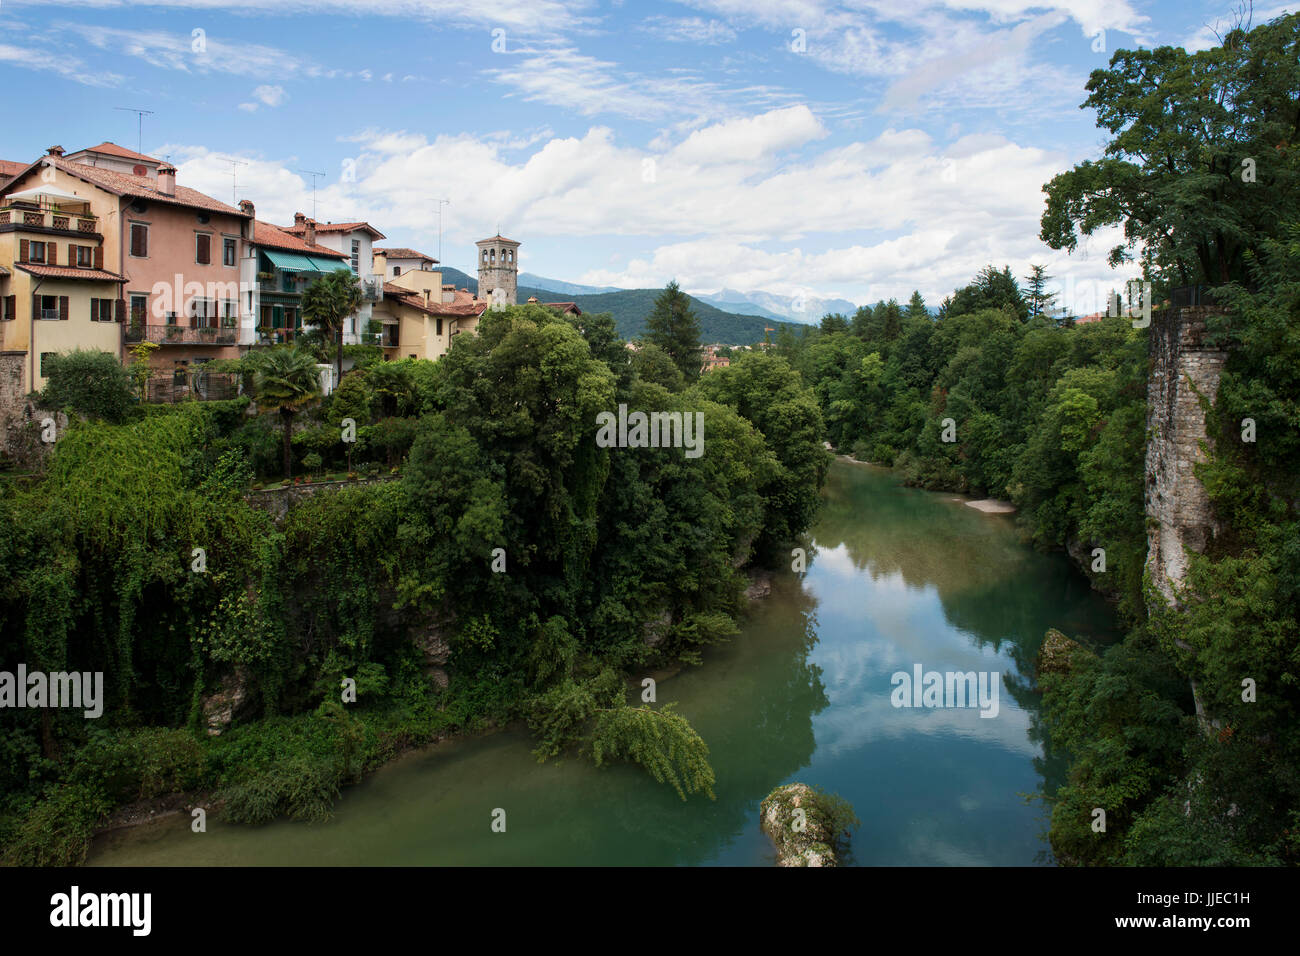 Panoramic view of Cividale del Friuli at the Natisone river, seen from the Devil's Bridge. Cividale del Friuli, Friuli-Venezia Giulia, northern Italy. Stock Photo